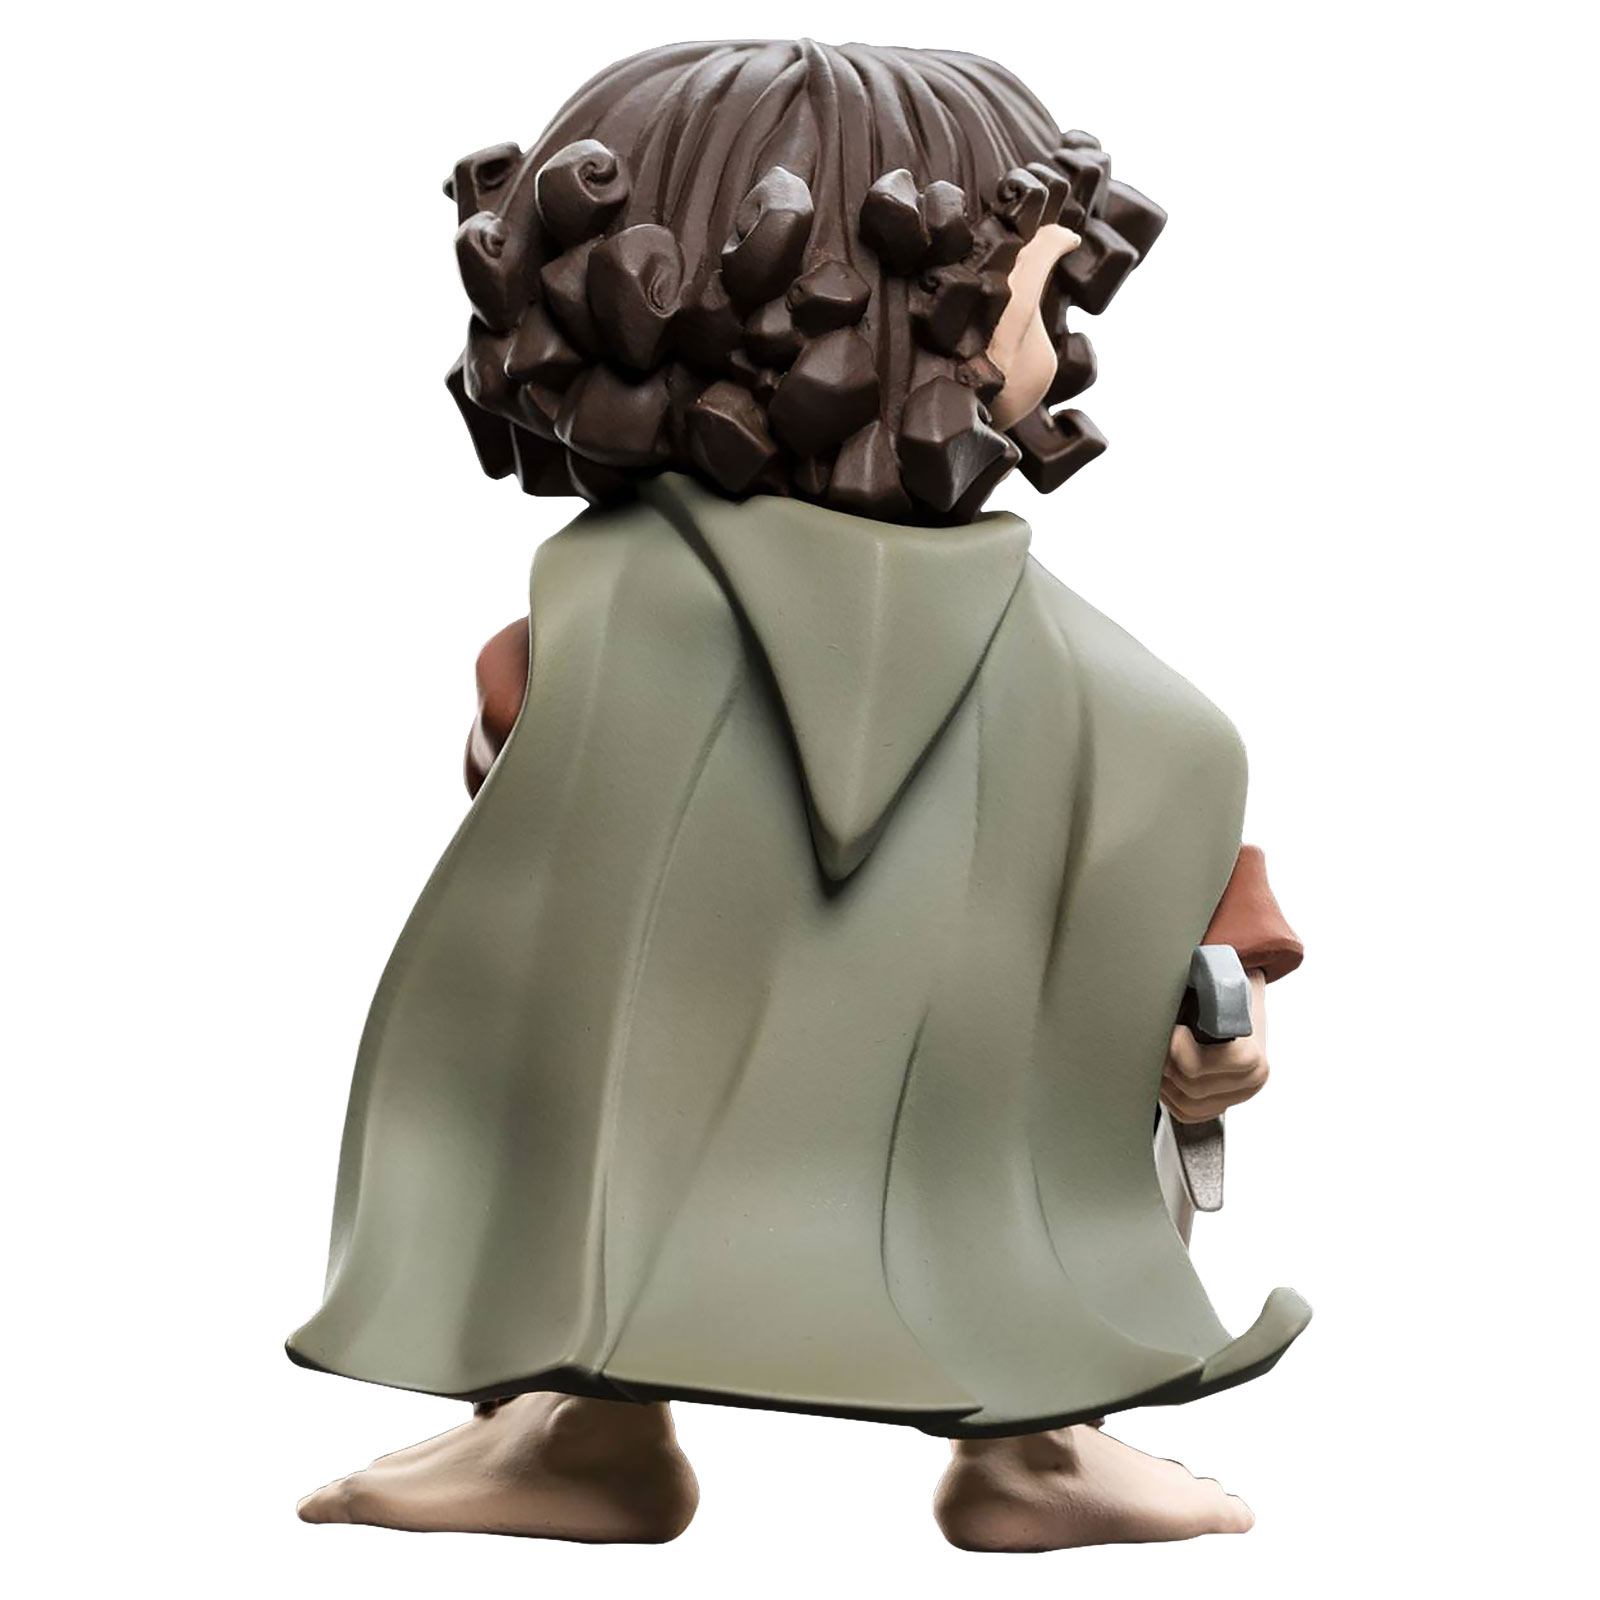 Le Seigneur des Anneaux - Figurine Mini Epics Frodo